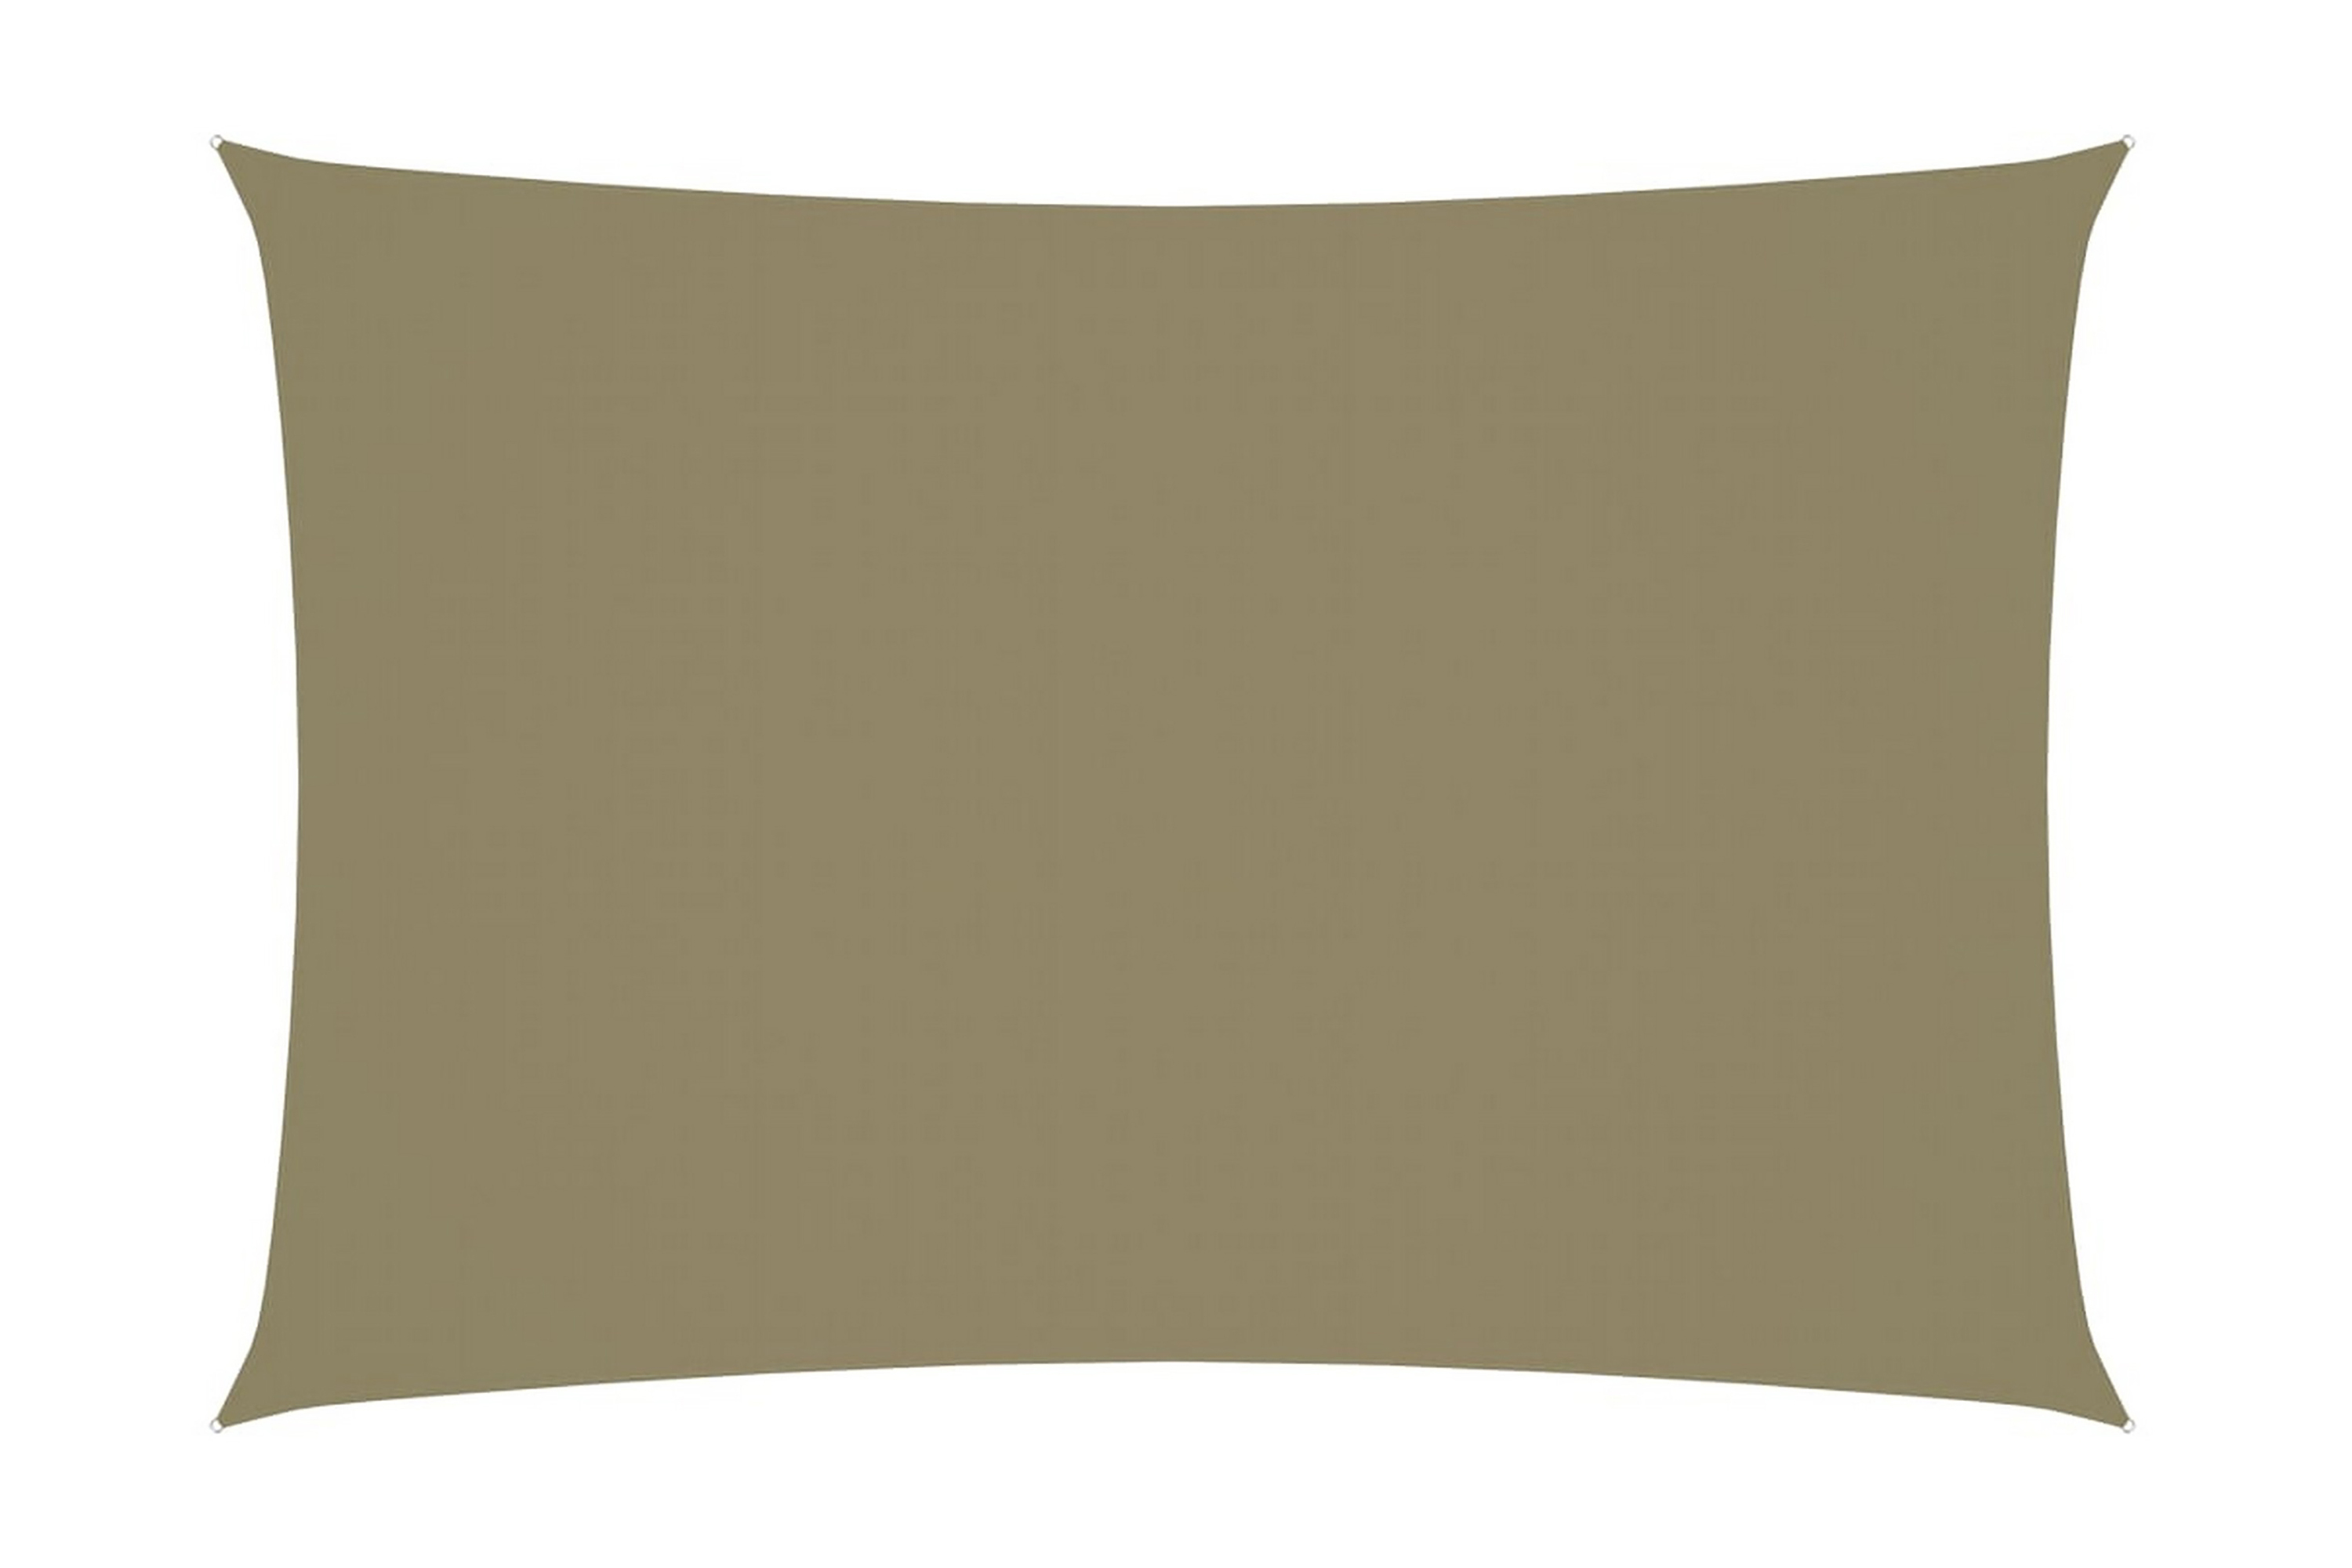 Solsegel oxfordtyg rektangulärt 2,5x4,5 m beige - Beige